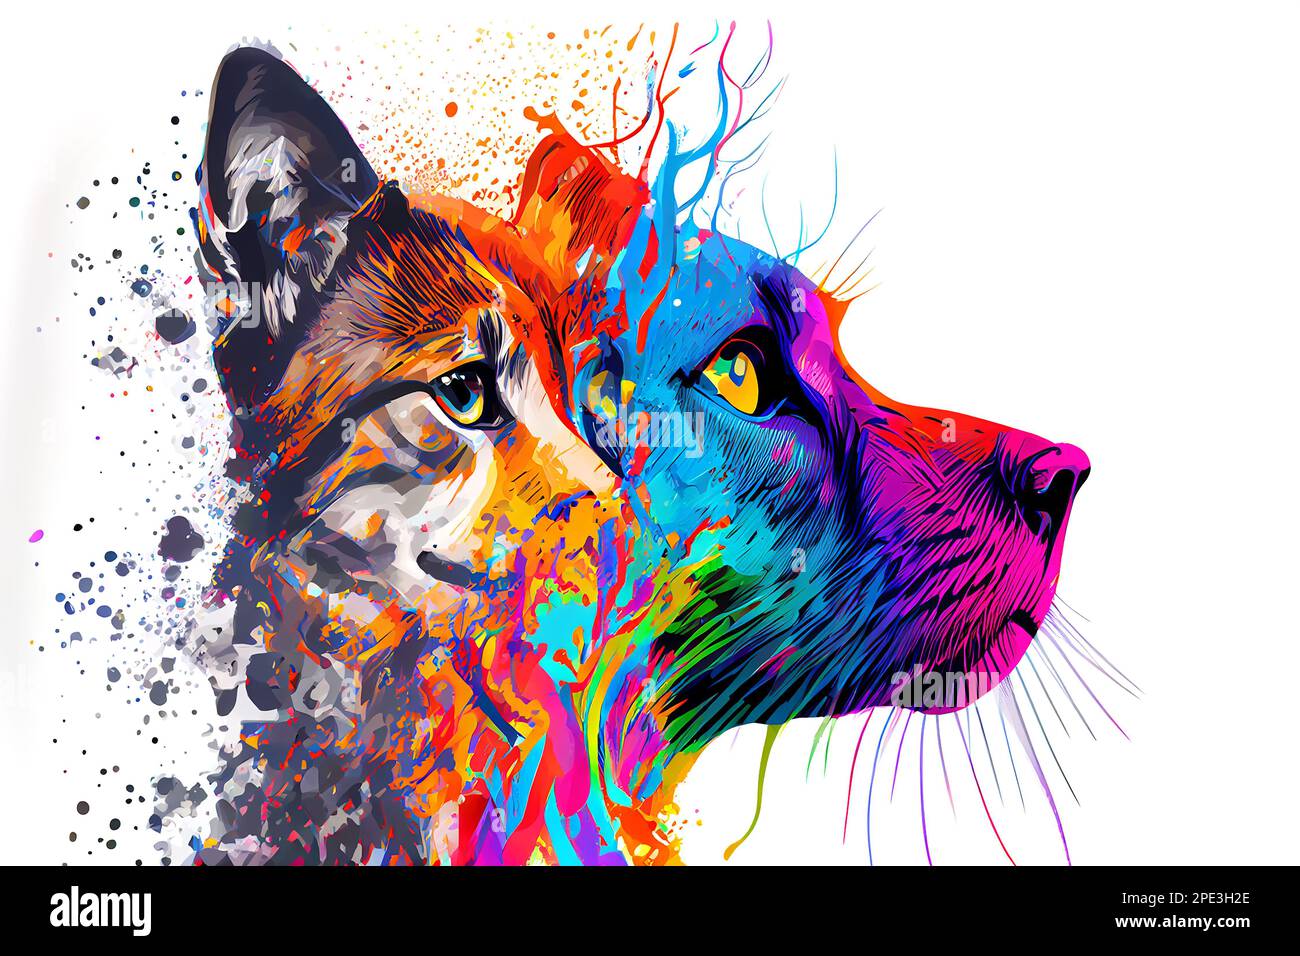 Animali pop art immagini e fotografie stock ad alta risoluzione - Alamy